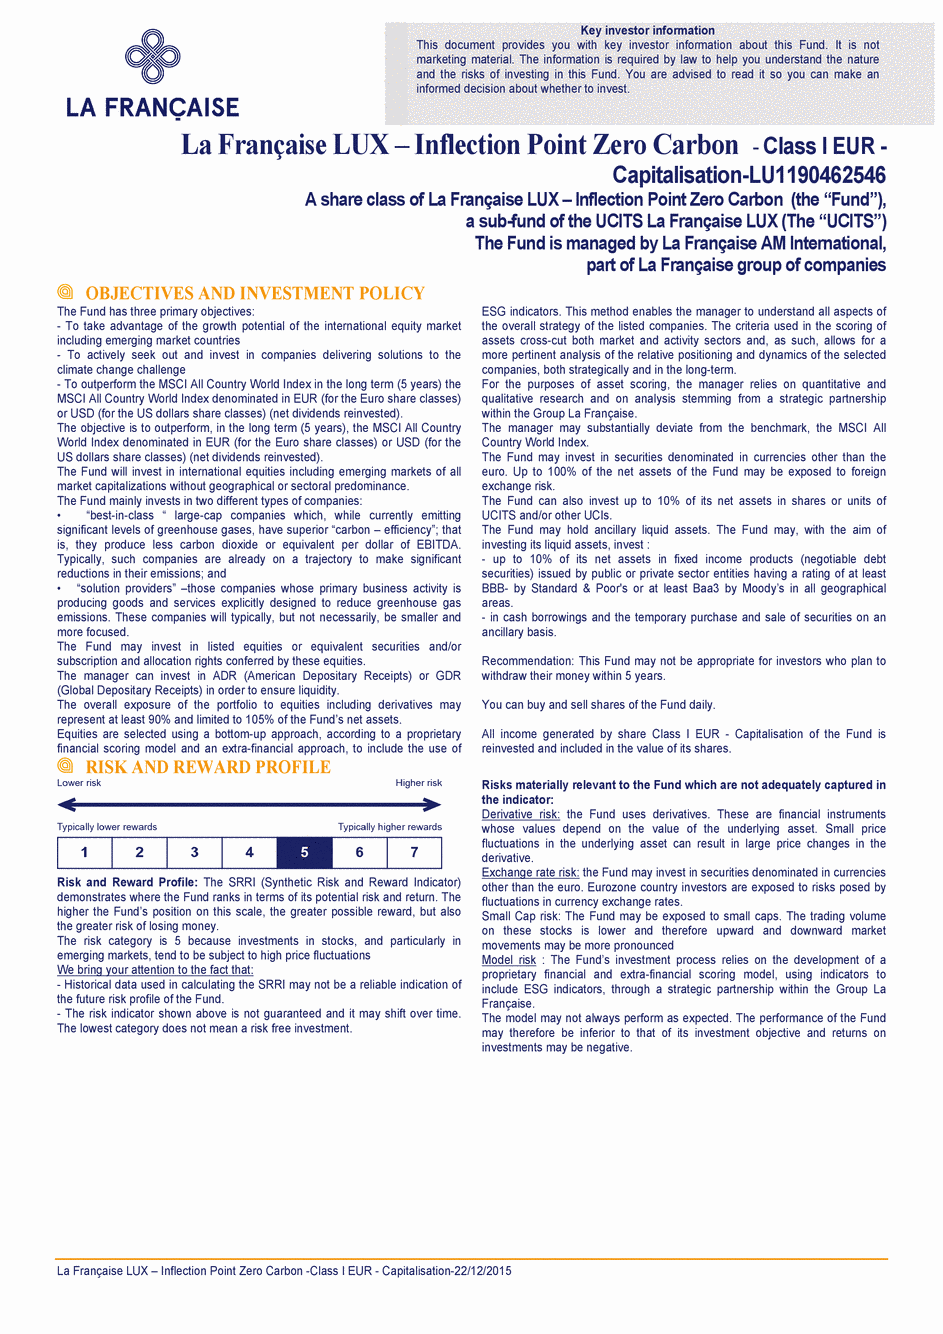 DICI La Française LUX - Inflection Point Carbon Impact Global - Class S EUR - 22/12/2015 - Anglais